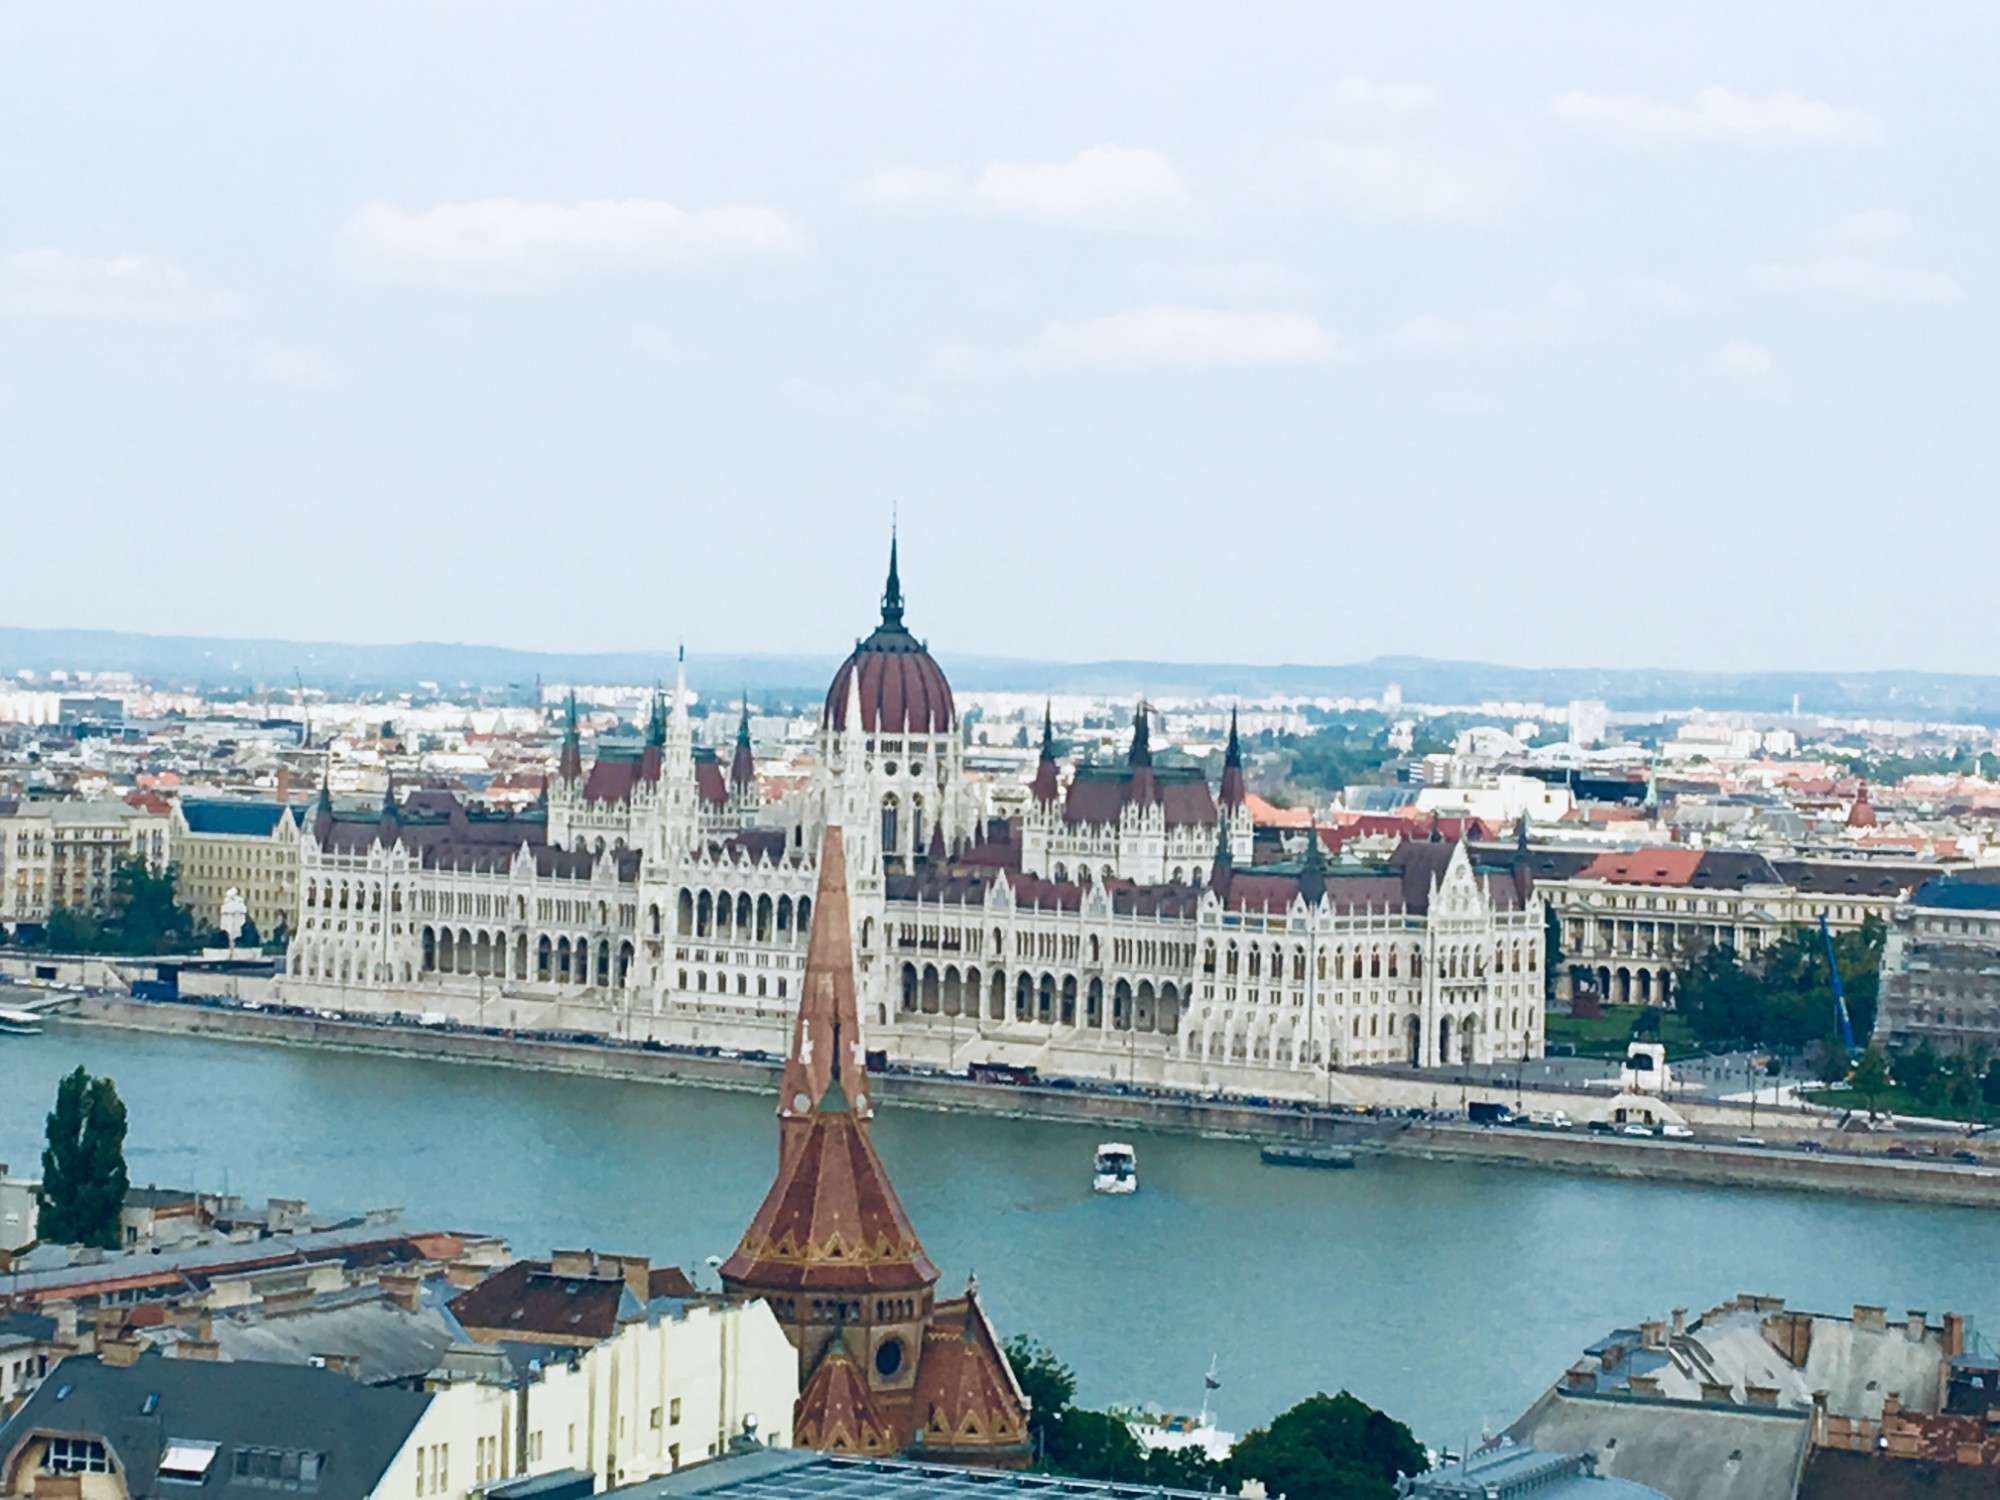 Остров Маргит — остров на Дунае в городе Будапеште. Остров расположен в центре города между двумя частями венгерской столицы — Будой и Пештом и соединяется с ними мостом Маргариты в южной части и мостом Арпада в северной.